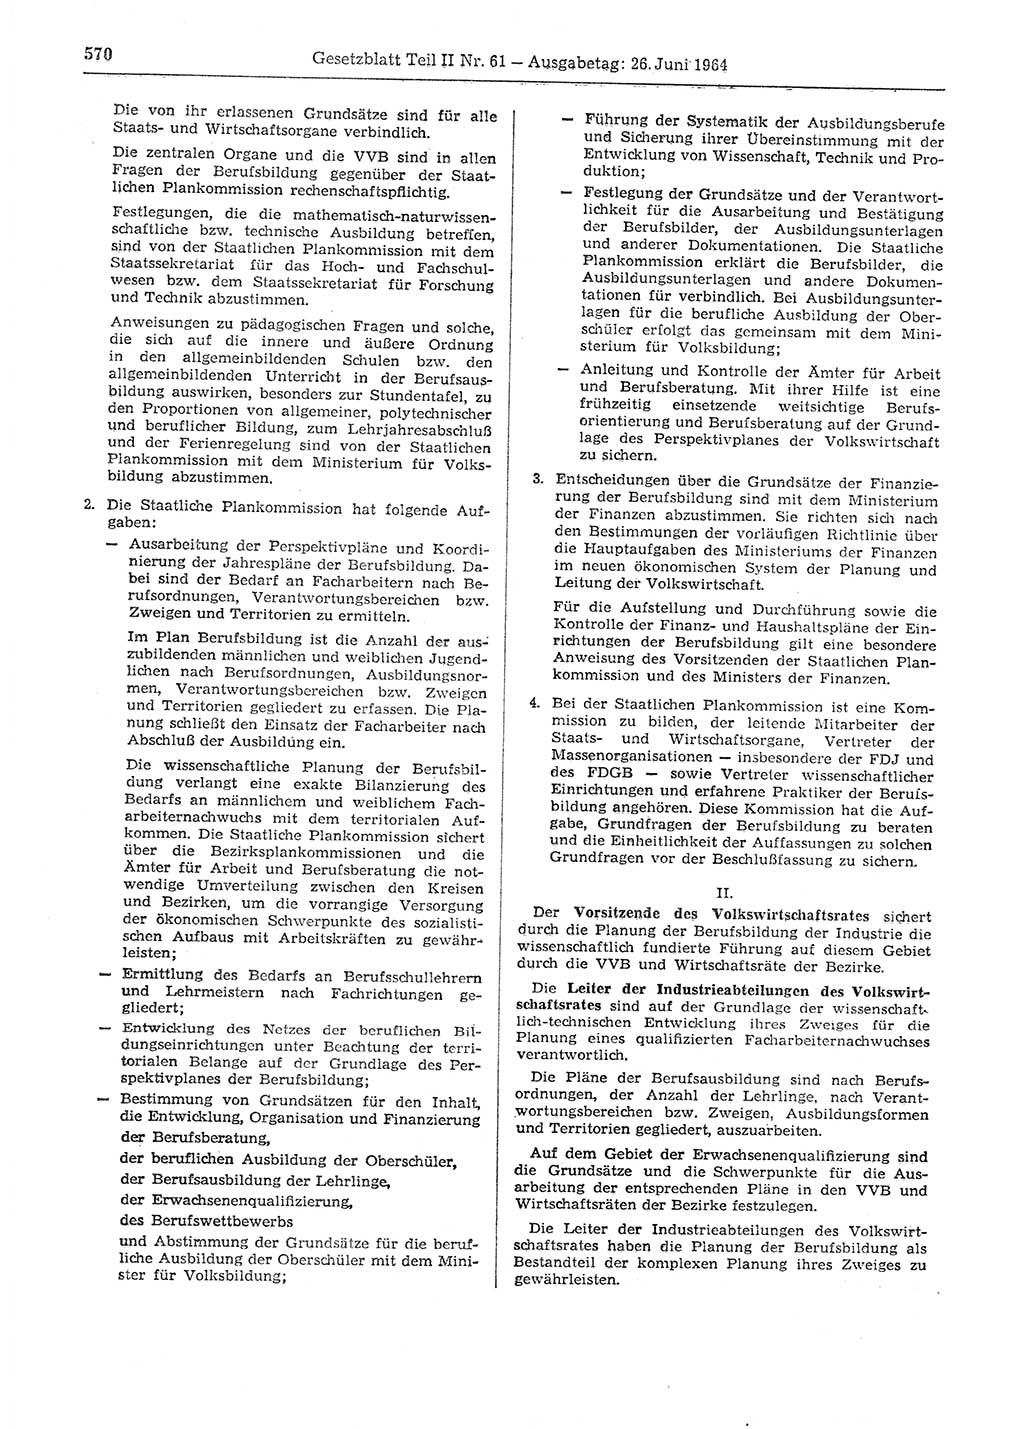 Gesetzblatt (GBl.) der Deutschen Demokratischen Republik (DDR) Teil ⅠⅠ 1964, Seite 570 (GBl. DDR ⅠⅠ 1964, S. 570)